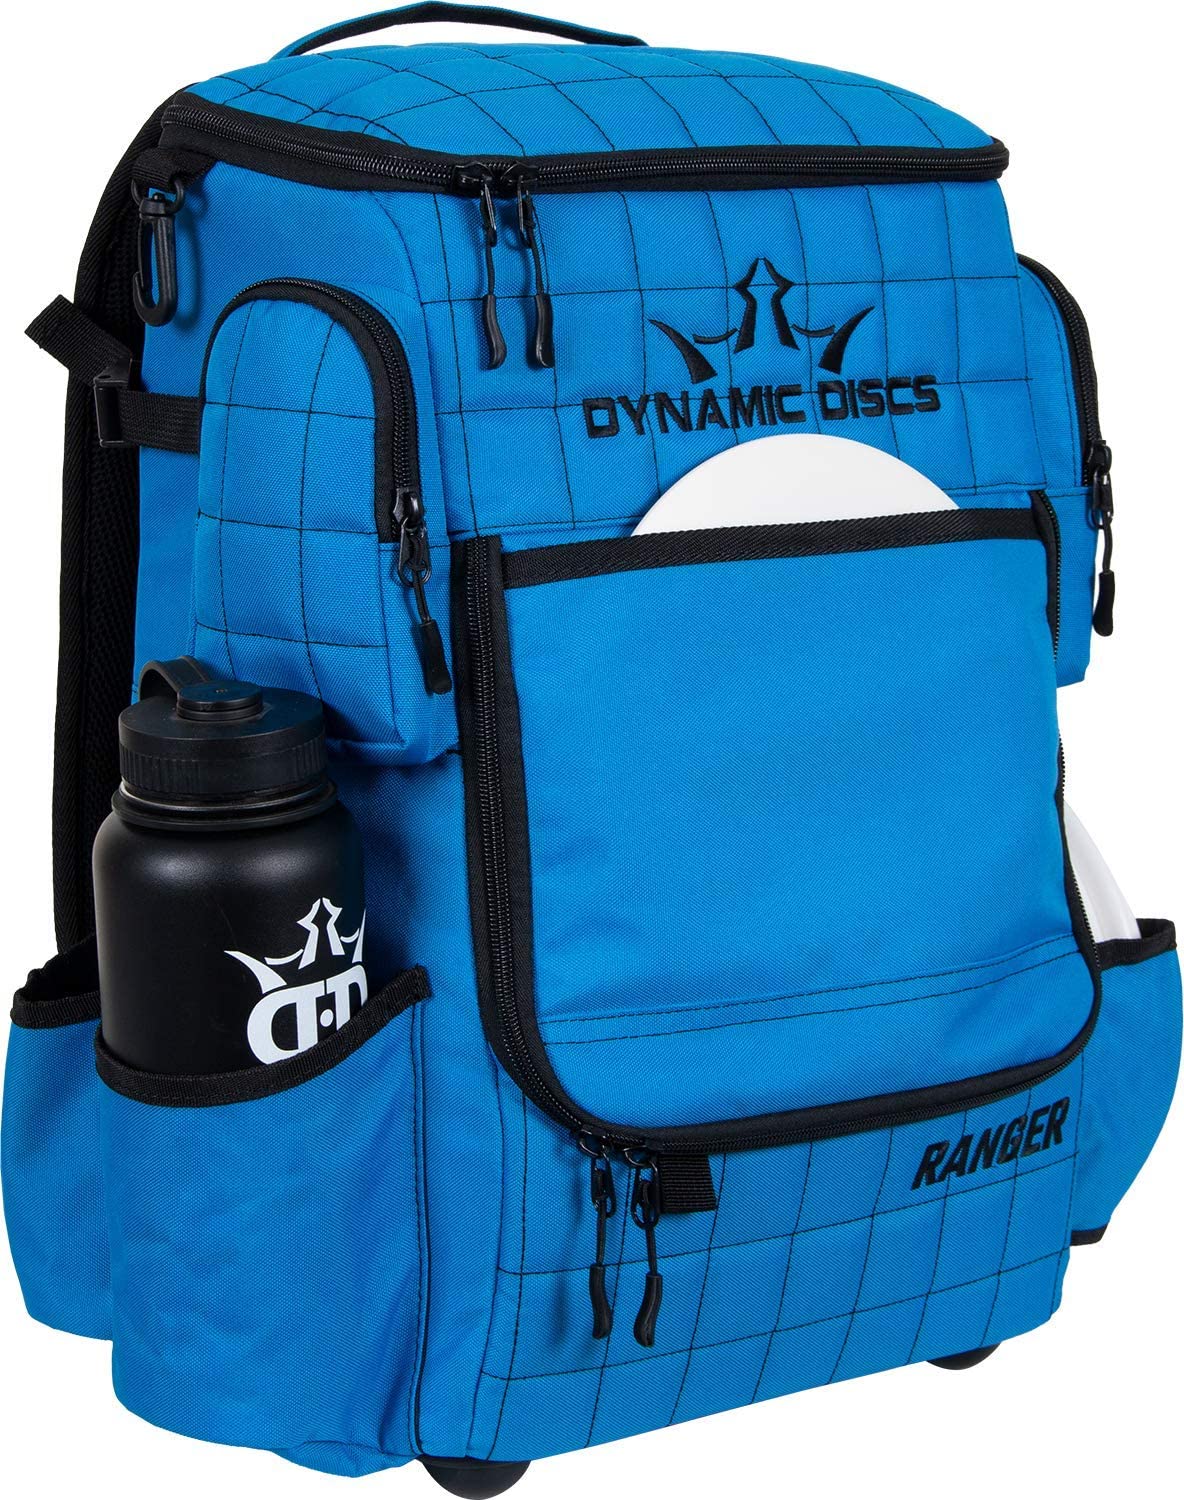 Dynamic Discs Ranger backpack Disc Golf Bag - Cobalt Blue